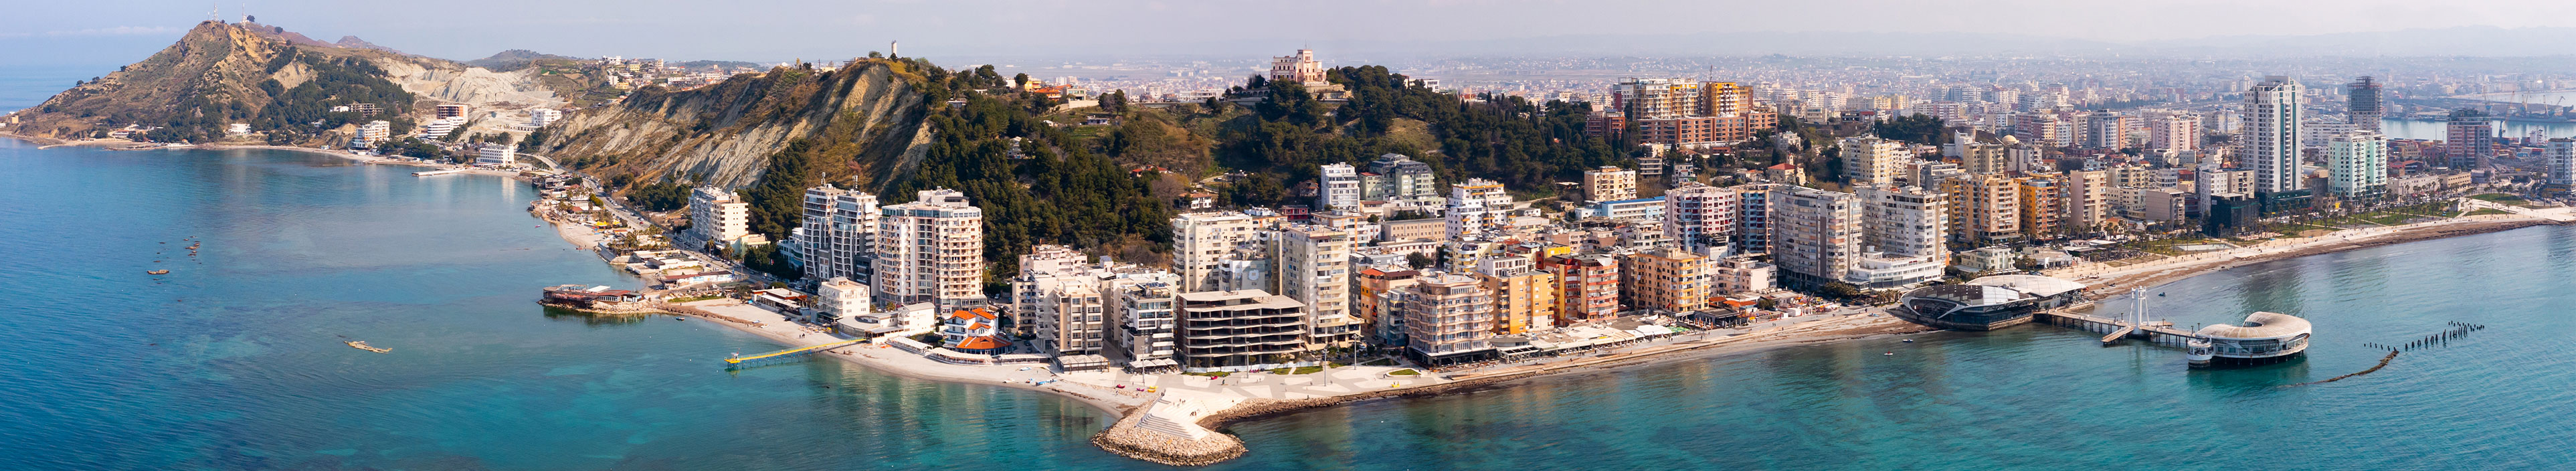 Blick auf Hotels und den Strand in Durres, Albanien.